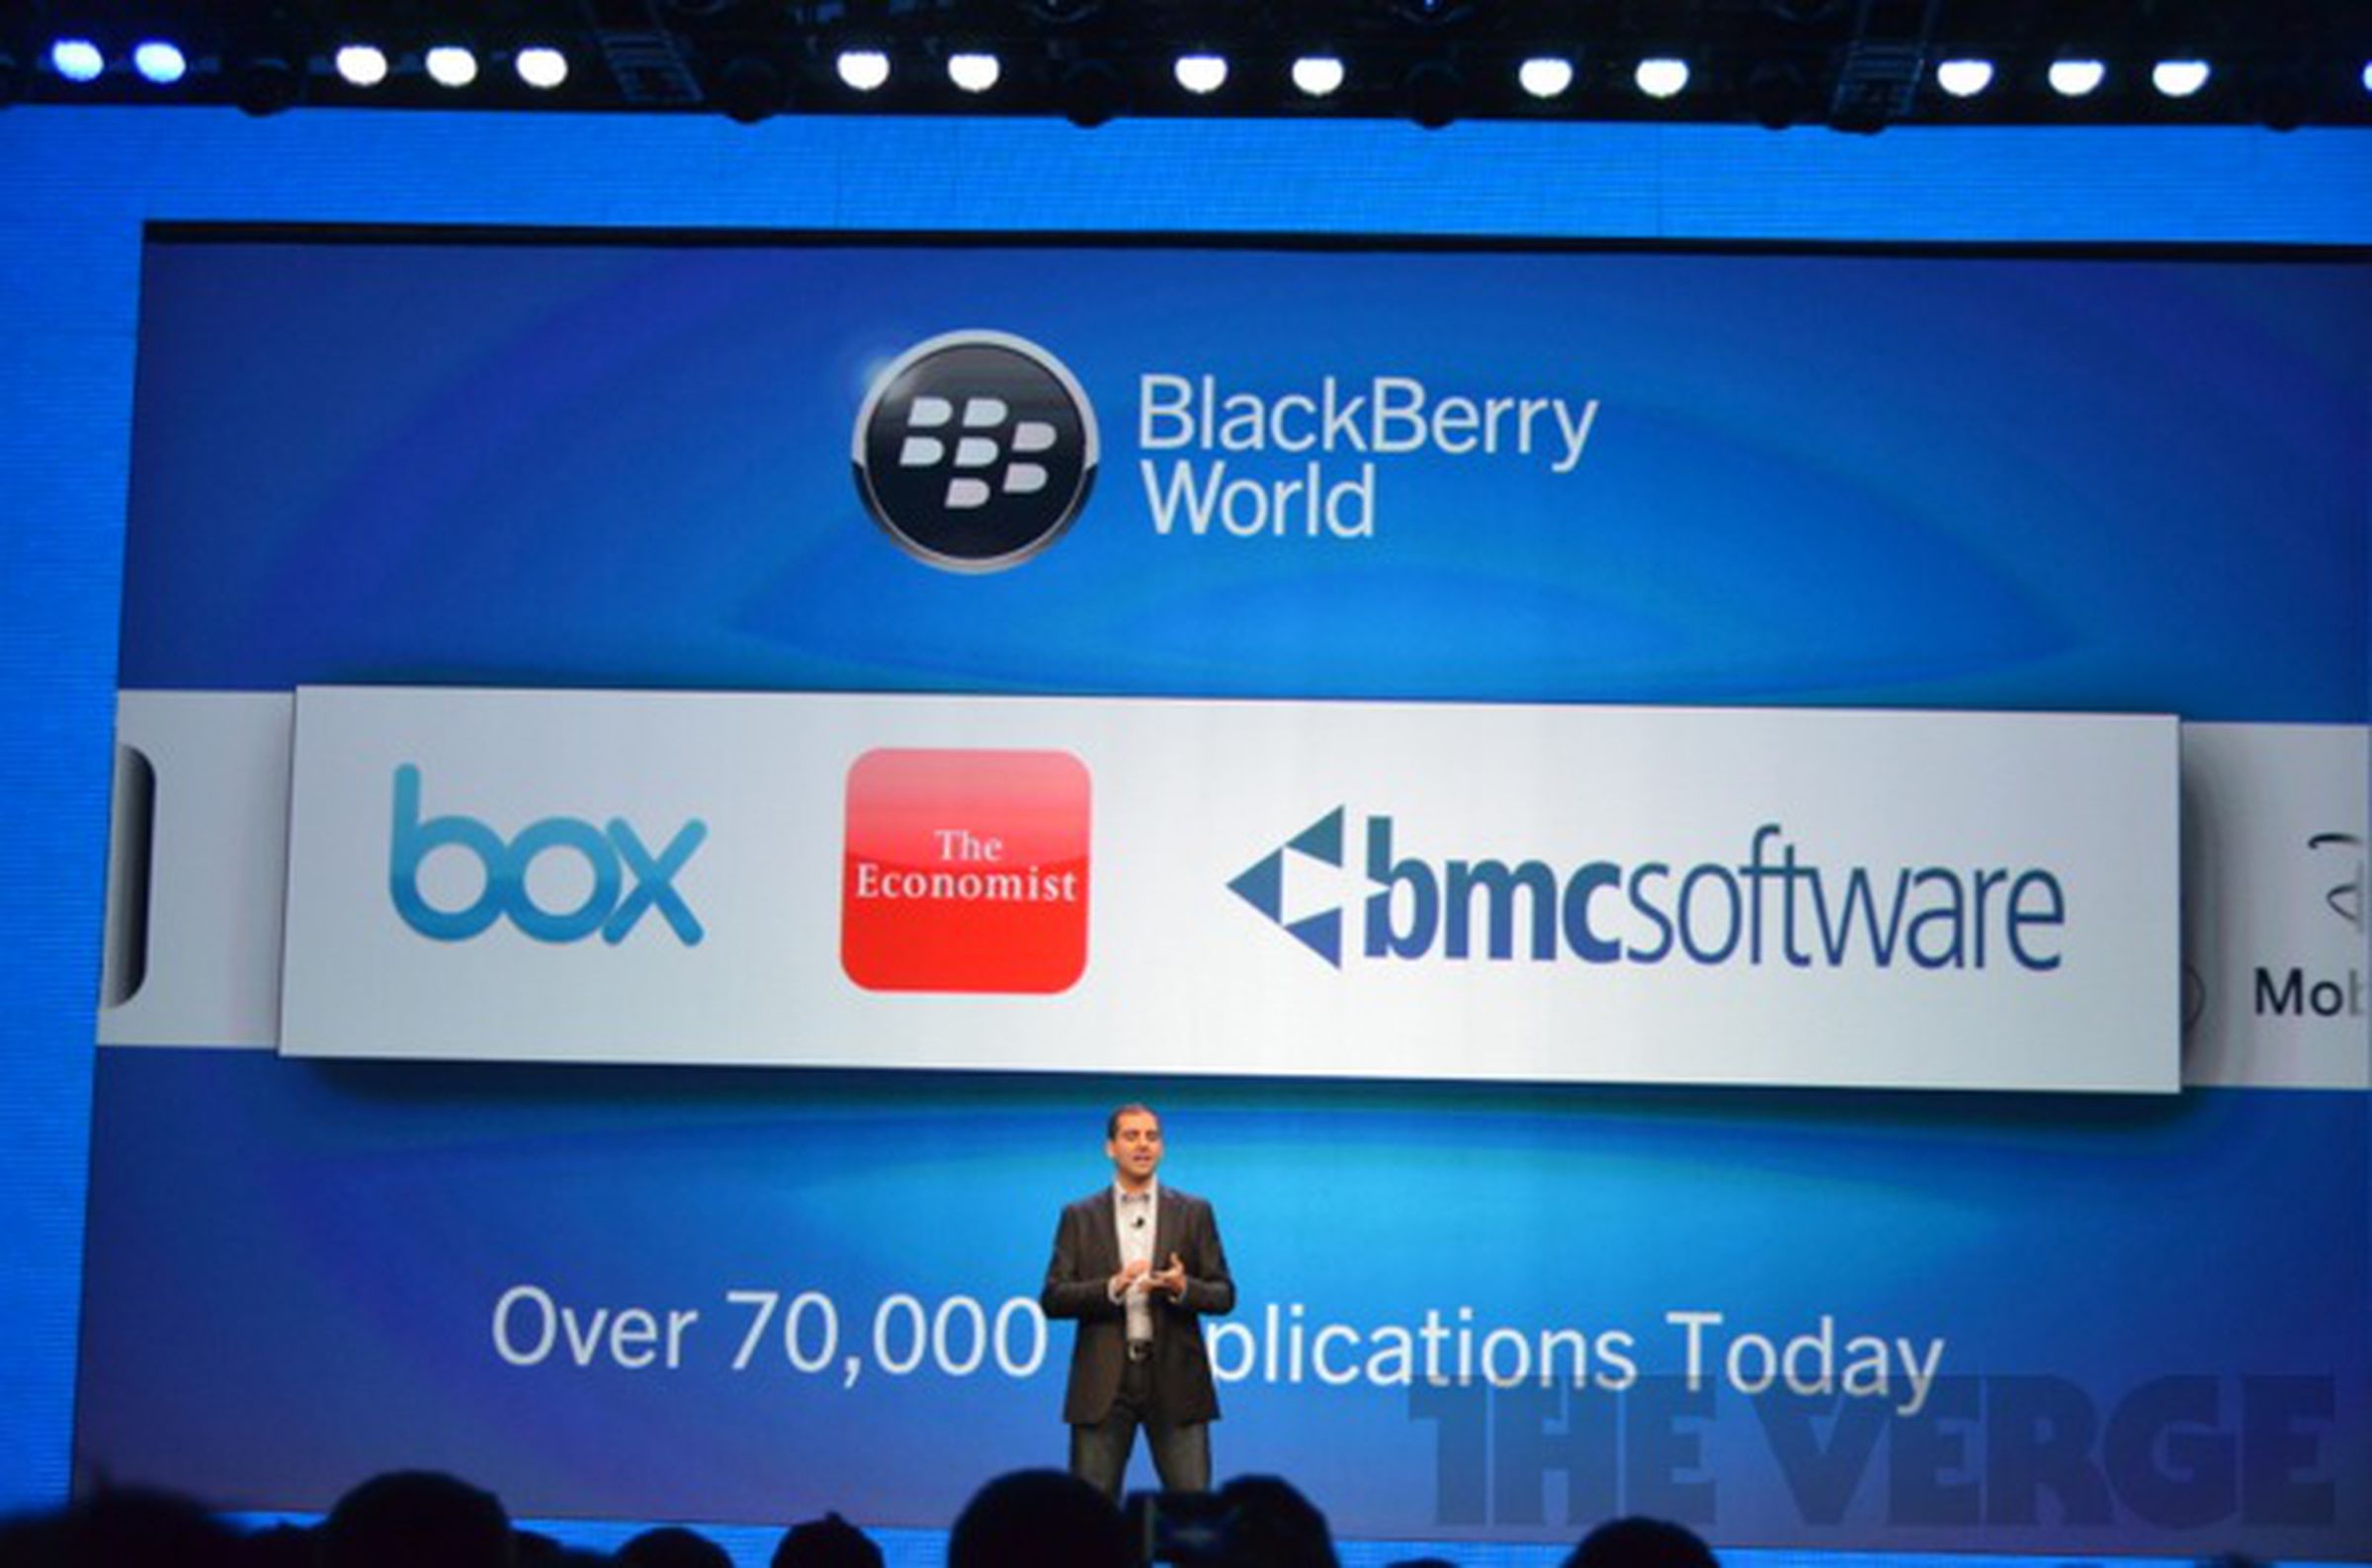 BlackBerry 10 apps